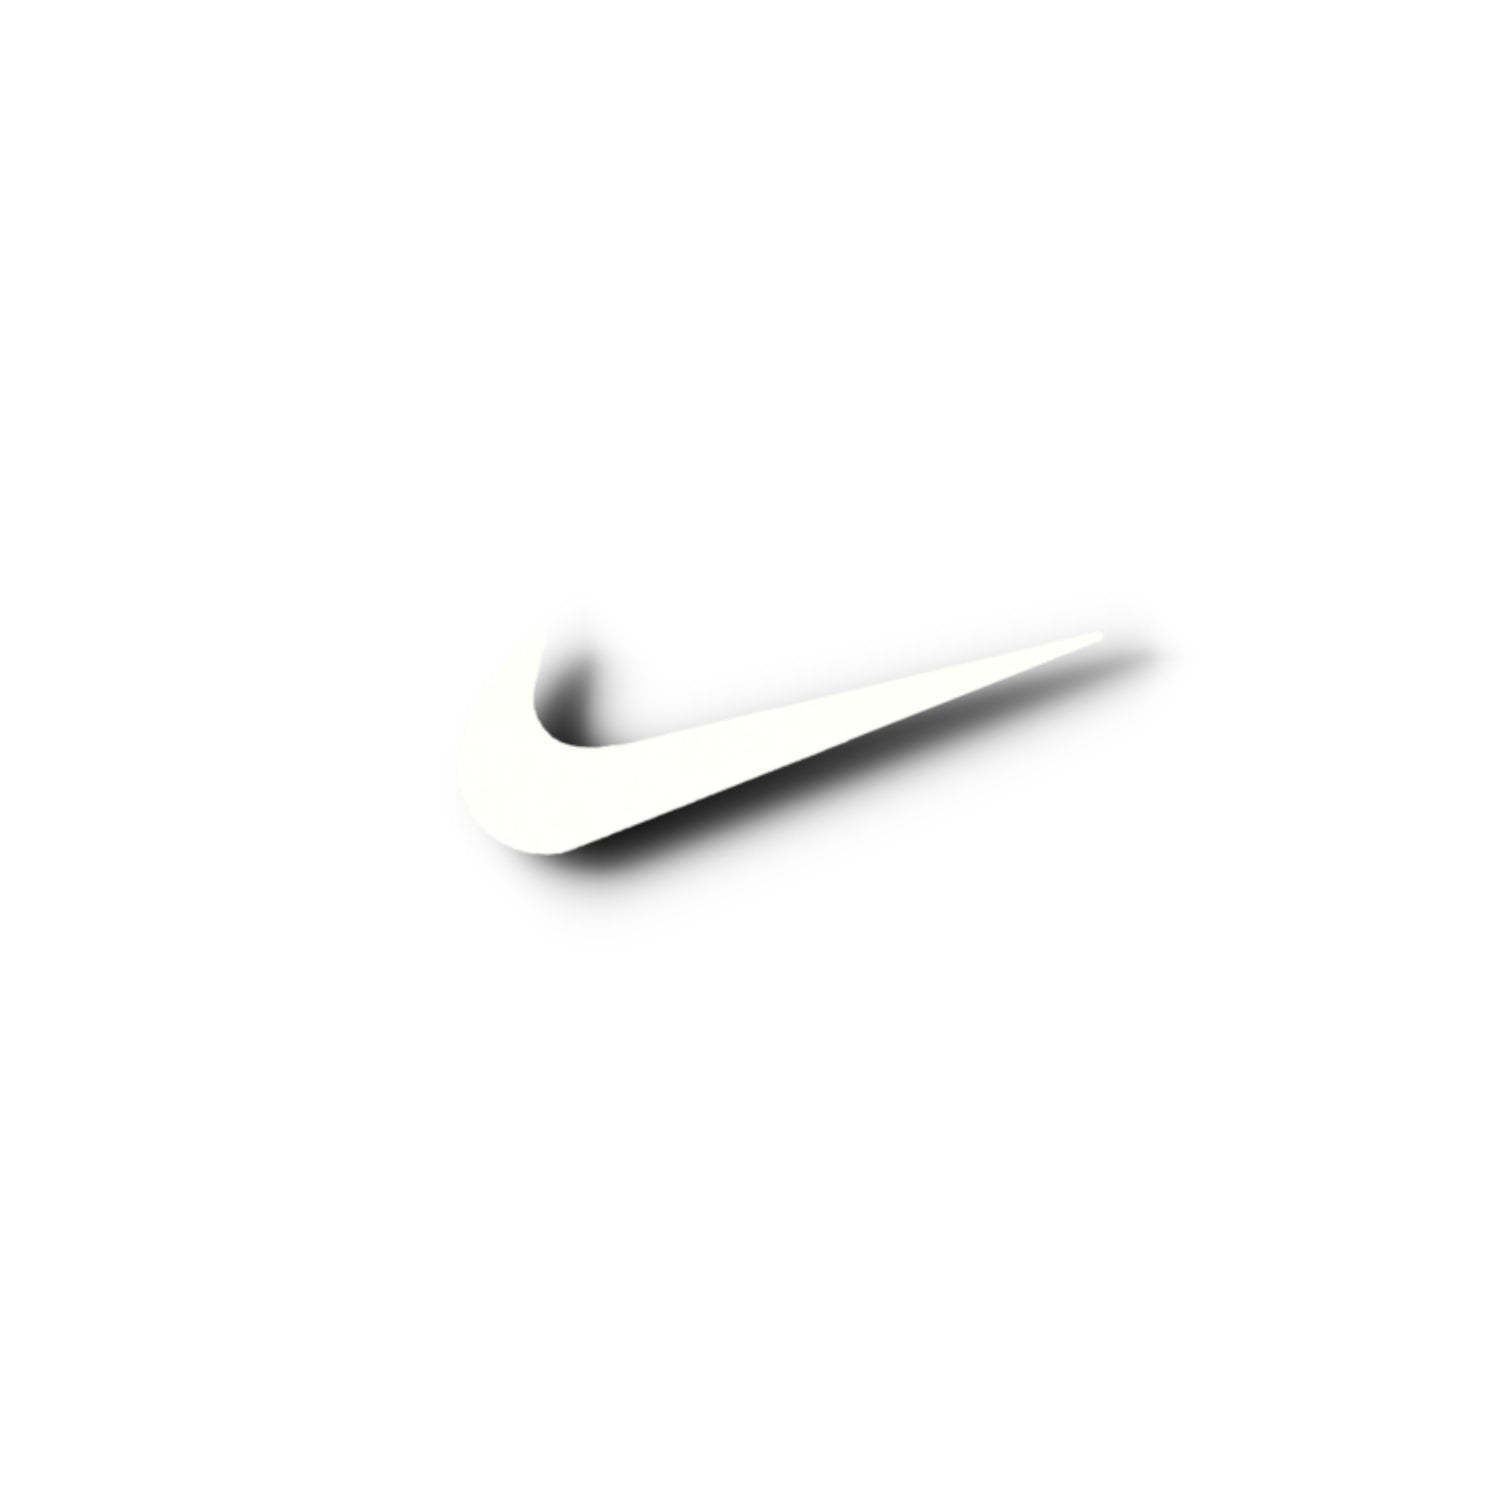 Nike vintage logo mang đến cho người xem cảm giác cổ điển và thanh lịch. Được sử dụng từ những năm đầu của Thương hiệu, Logo này đã trở thành biểu tượng mạnh mẽ của Nike. Xem hình ảnh để khám phá thêm.